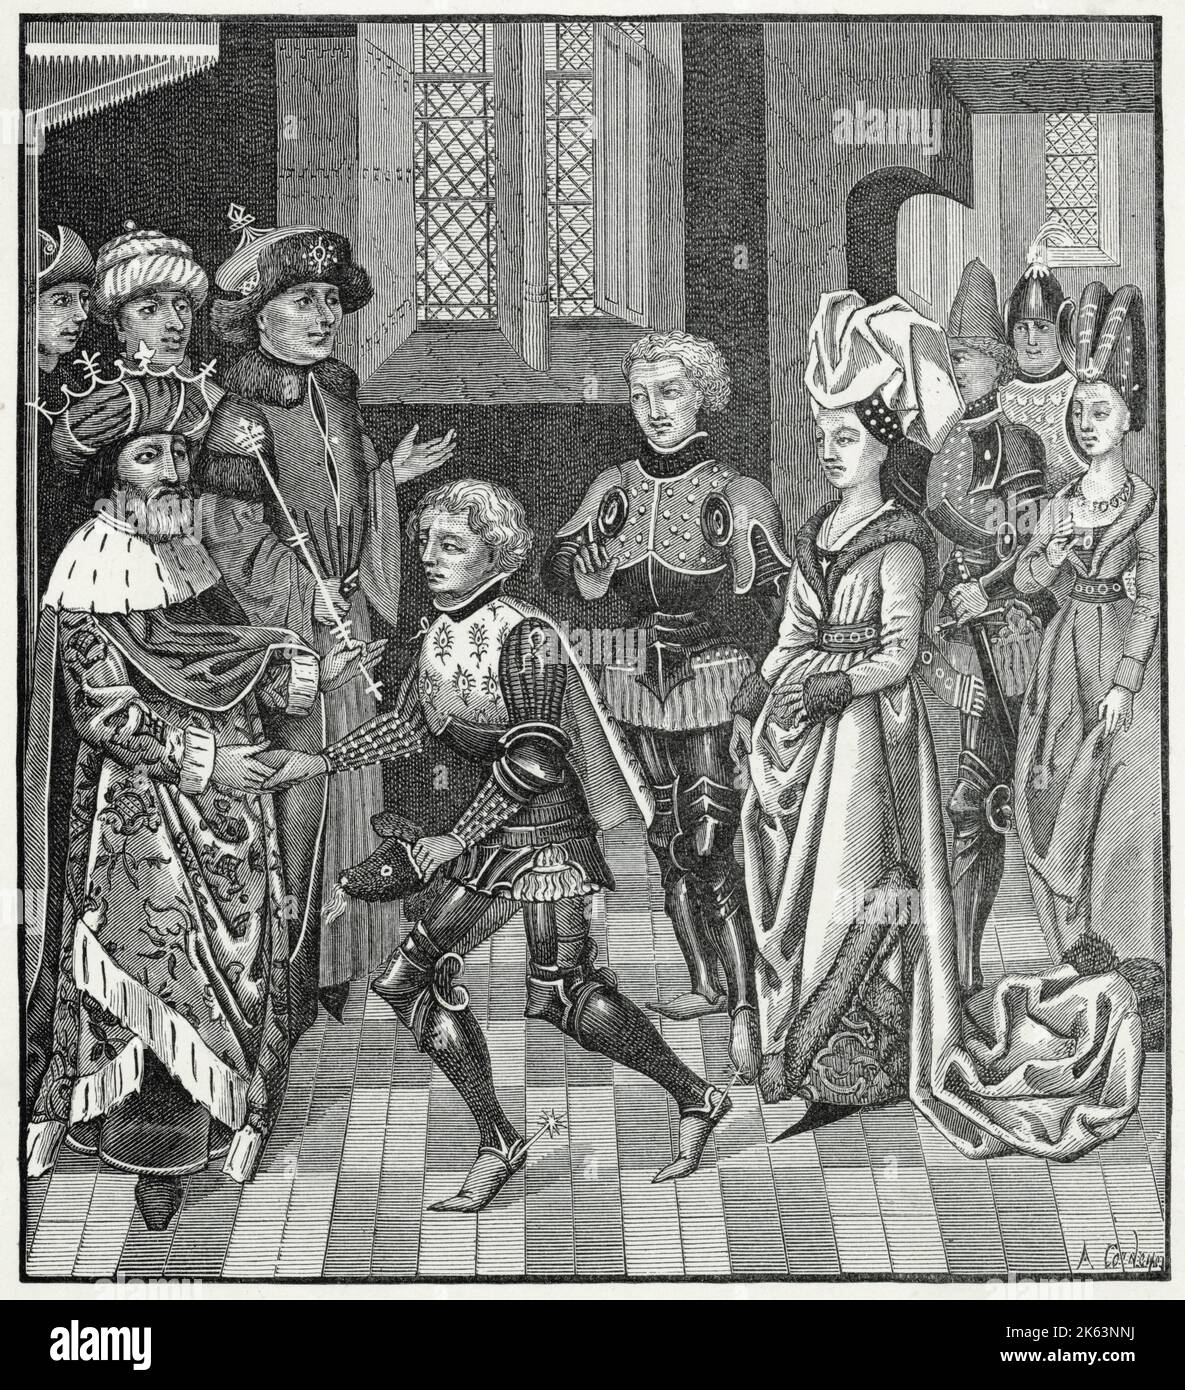 DER ERSTE KREUZZUG-Empfang von Gautier-sans-avoir durch den König von Ungarn, der ihm erlaubt, sein Territorium mit den Kreuzfahrern zu durchqueren. Stockfoto